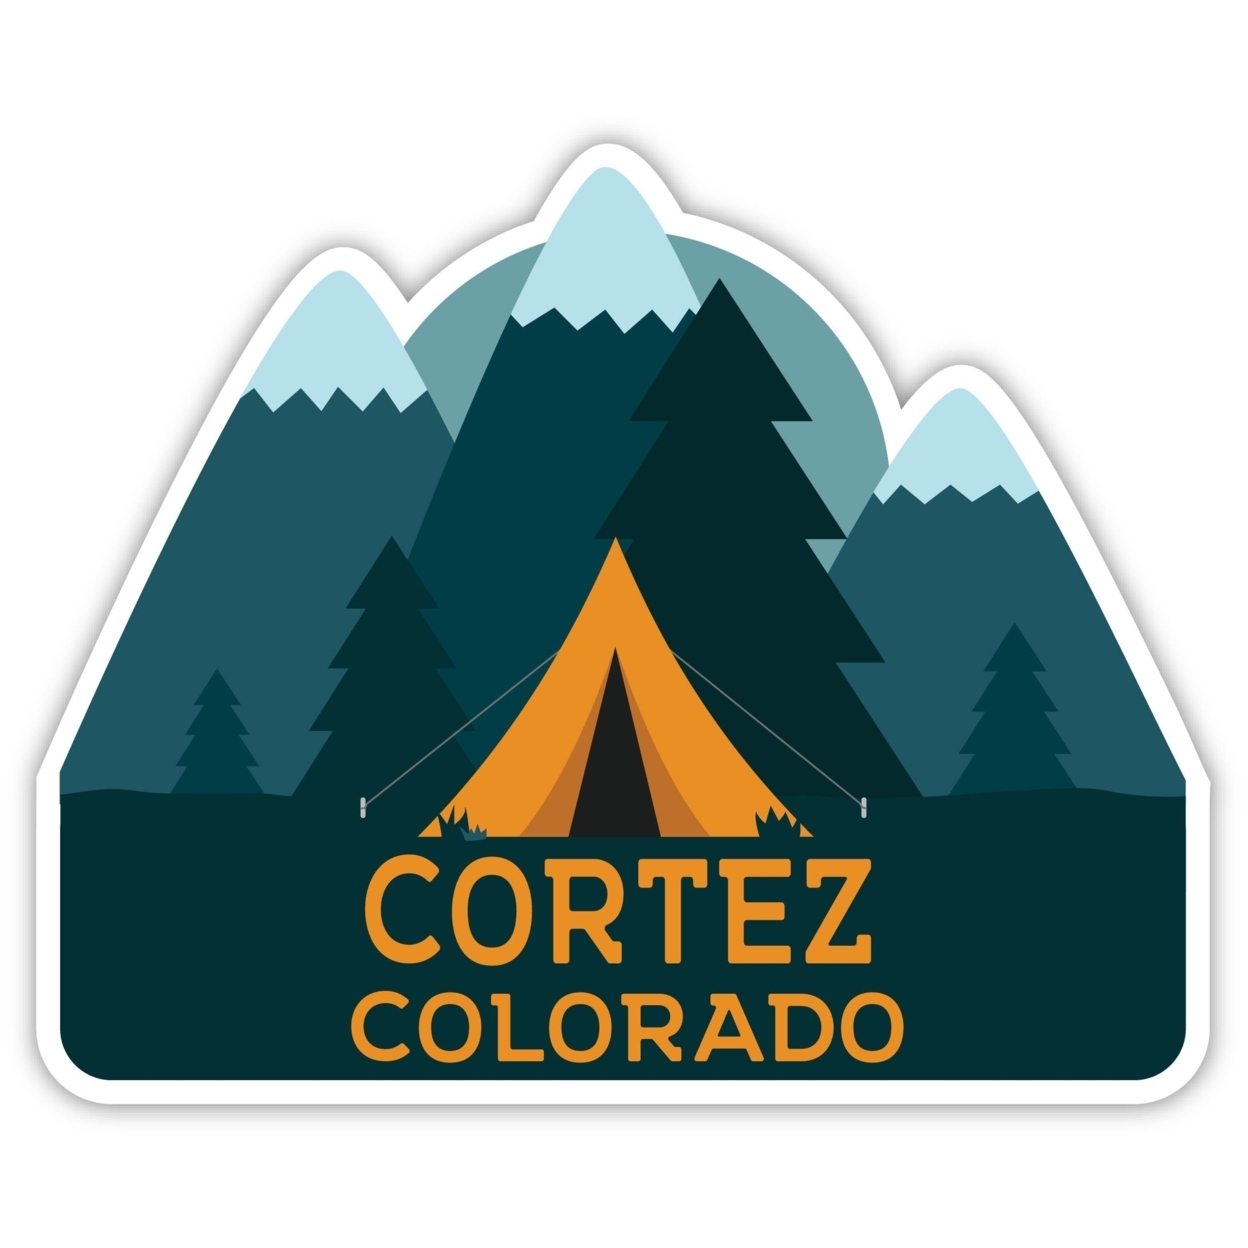 Cortez Colorado Souvenir Decorative Stickers (Choose Theme And Size) - 4-Pack, 4-Inch, Tent